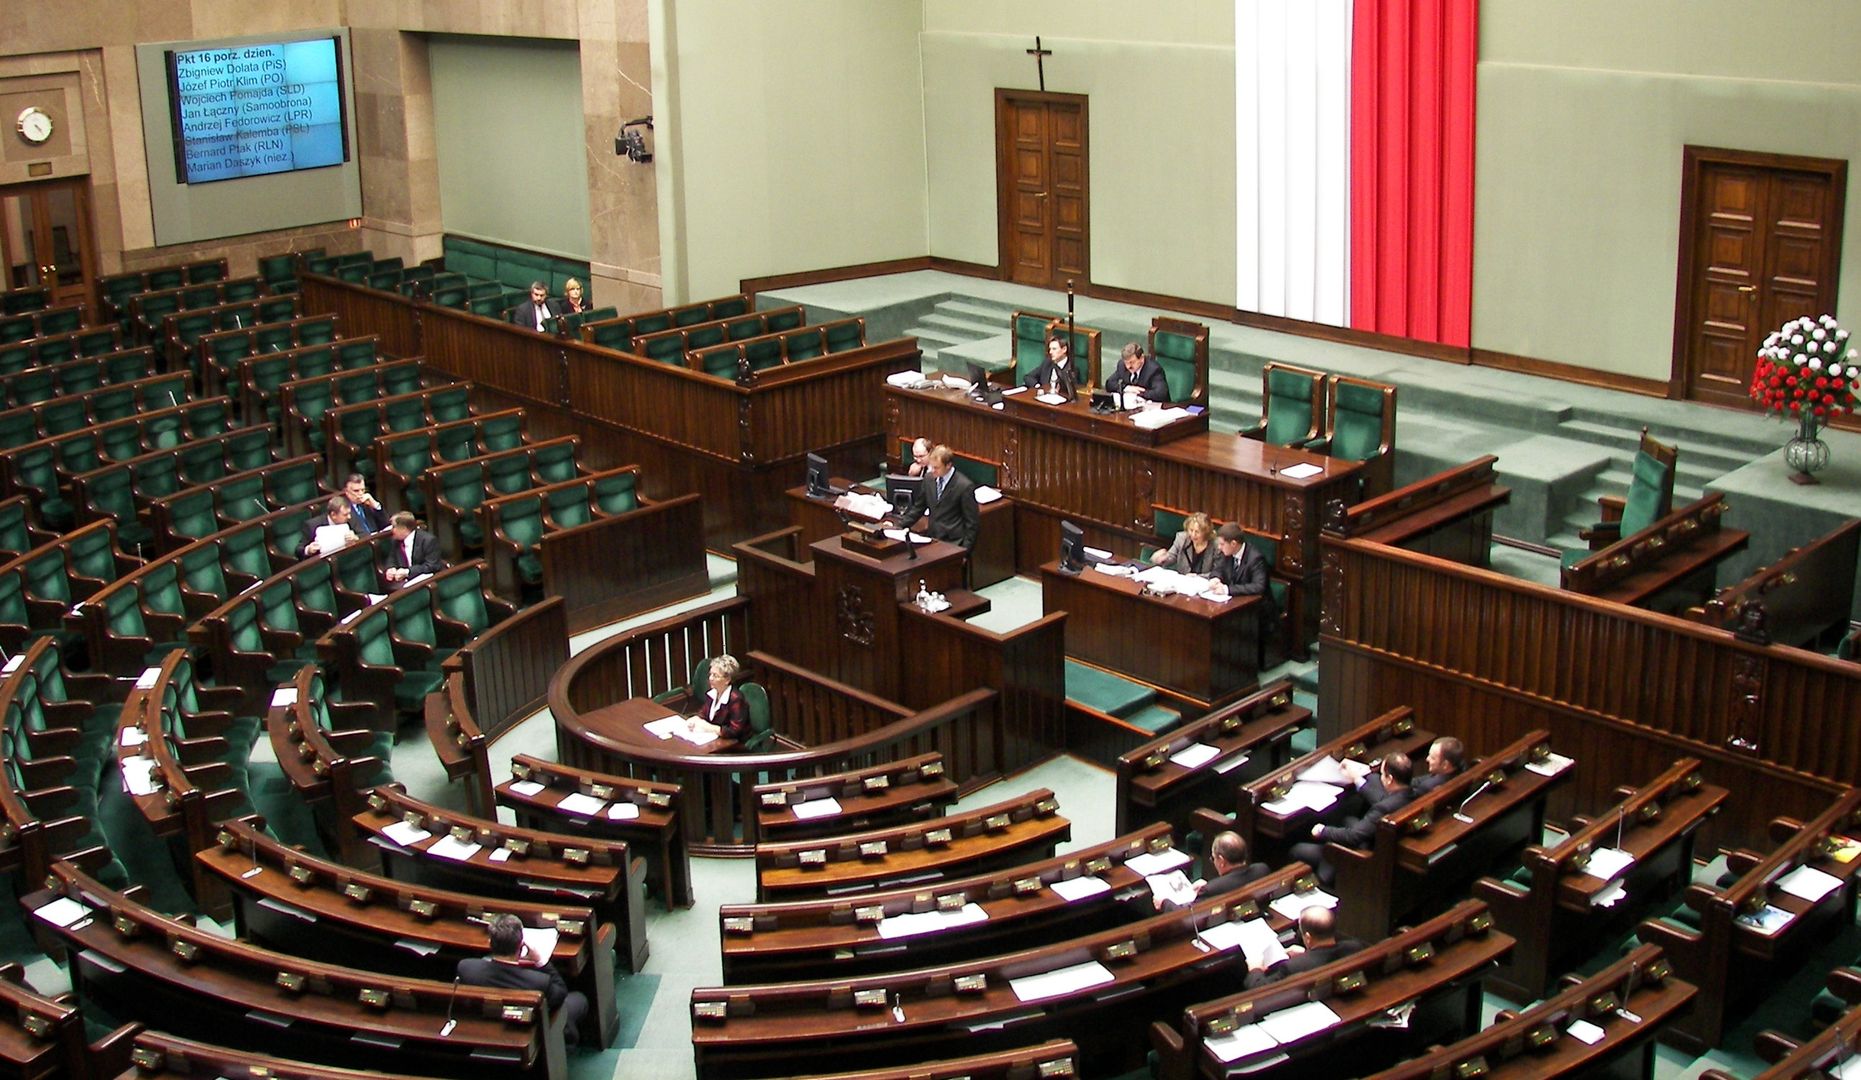 Sejm: Wołyń to ludobójstwo. "10 osób wstrzymało się. Hańba"